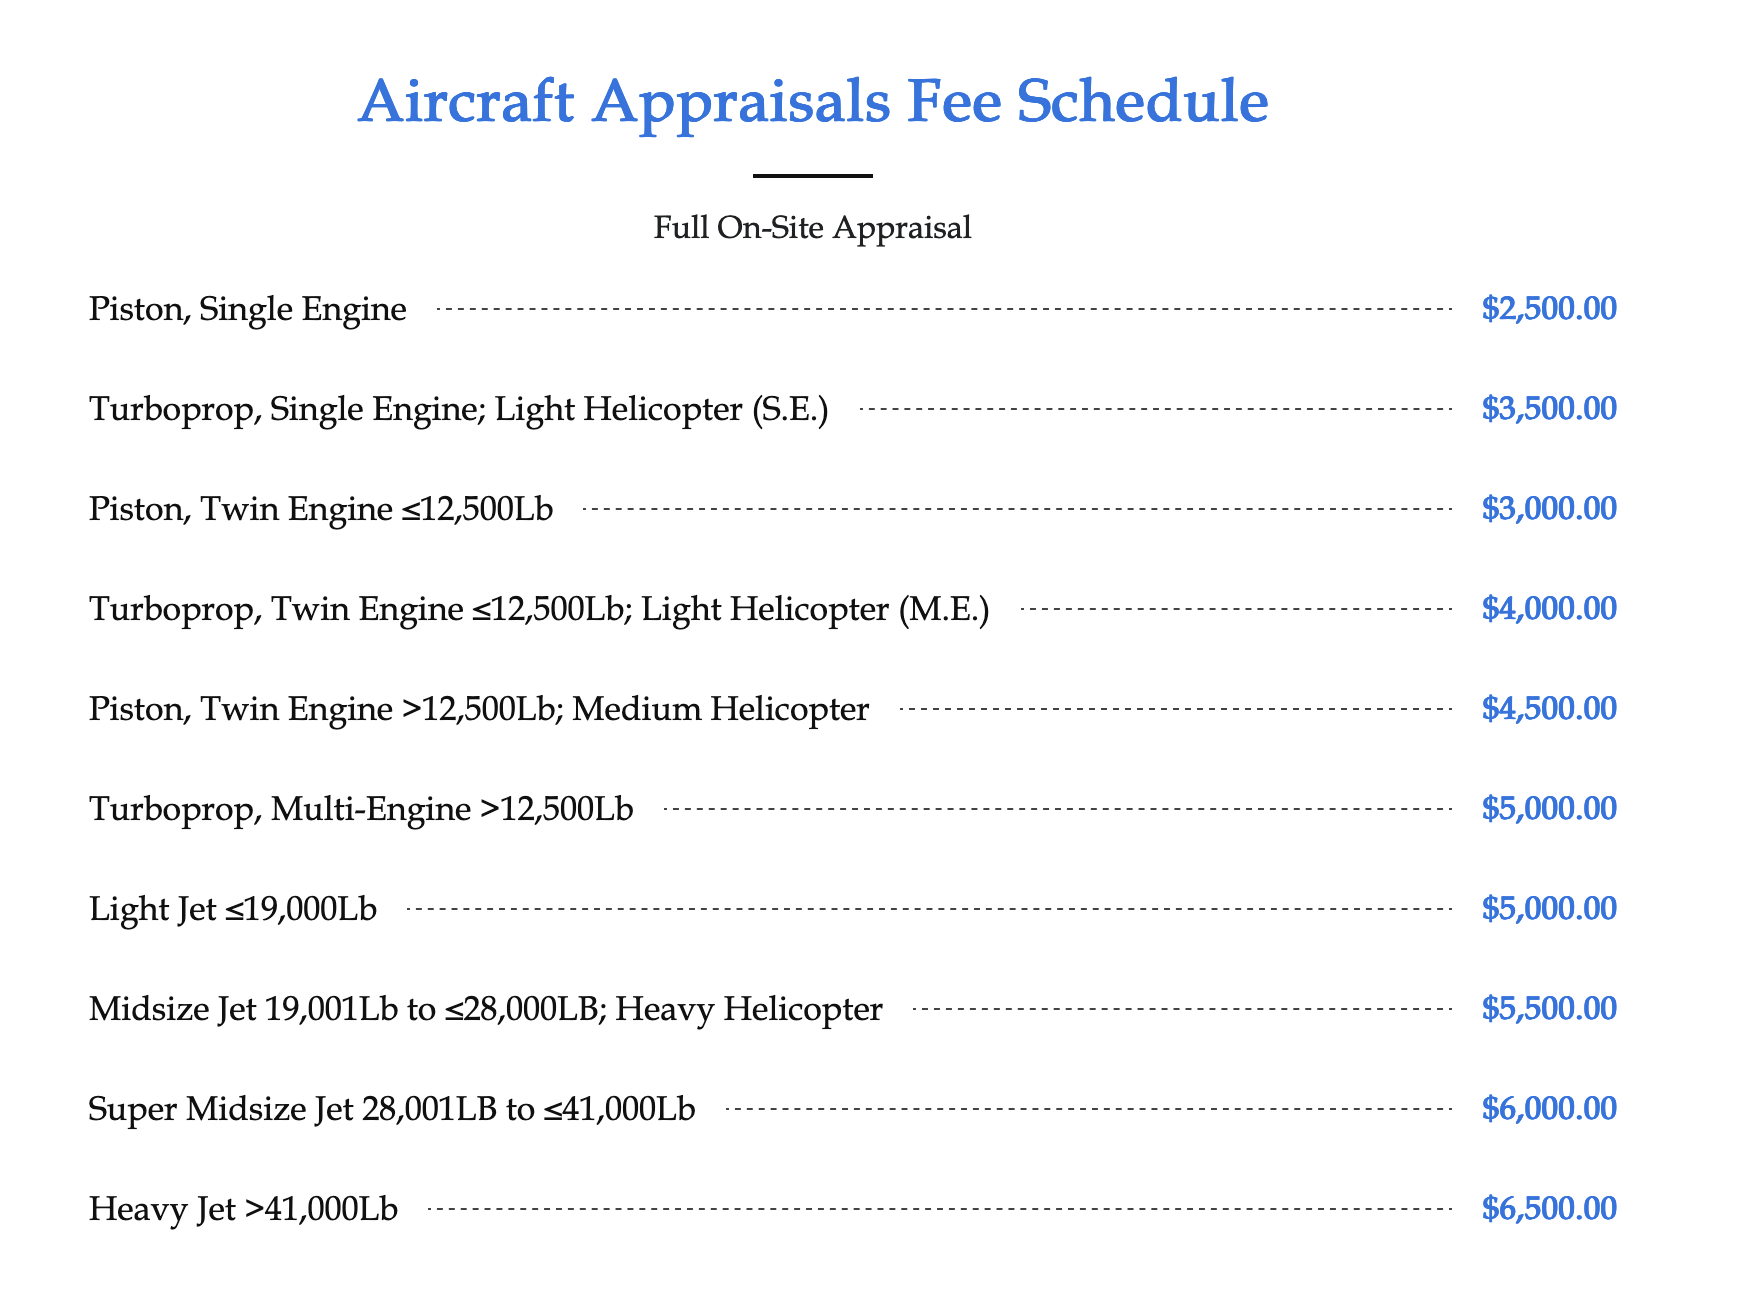 Aircraft Appraisal Fee Schedule